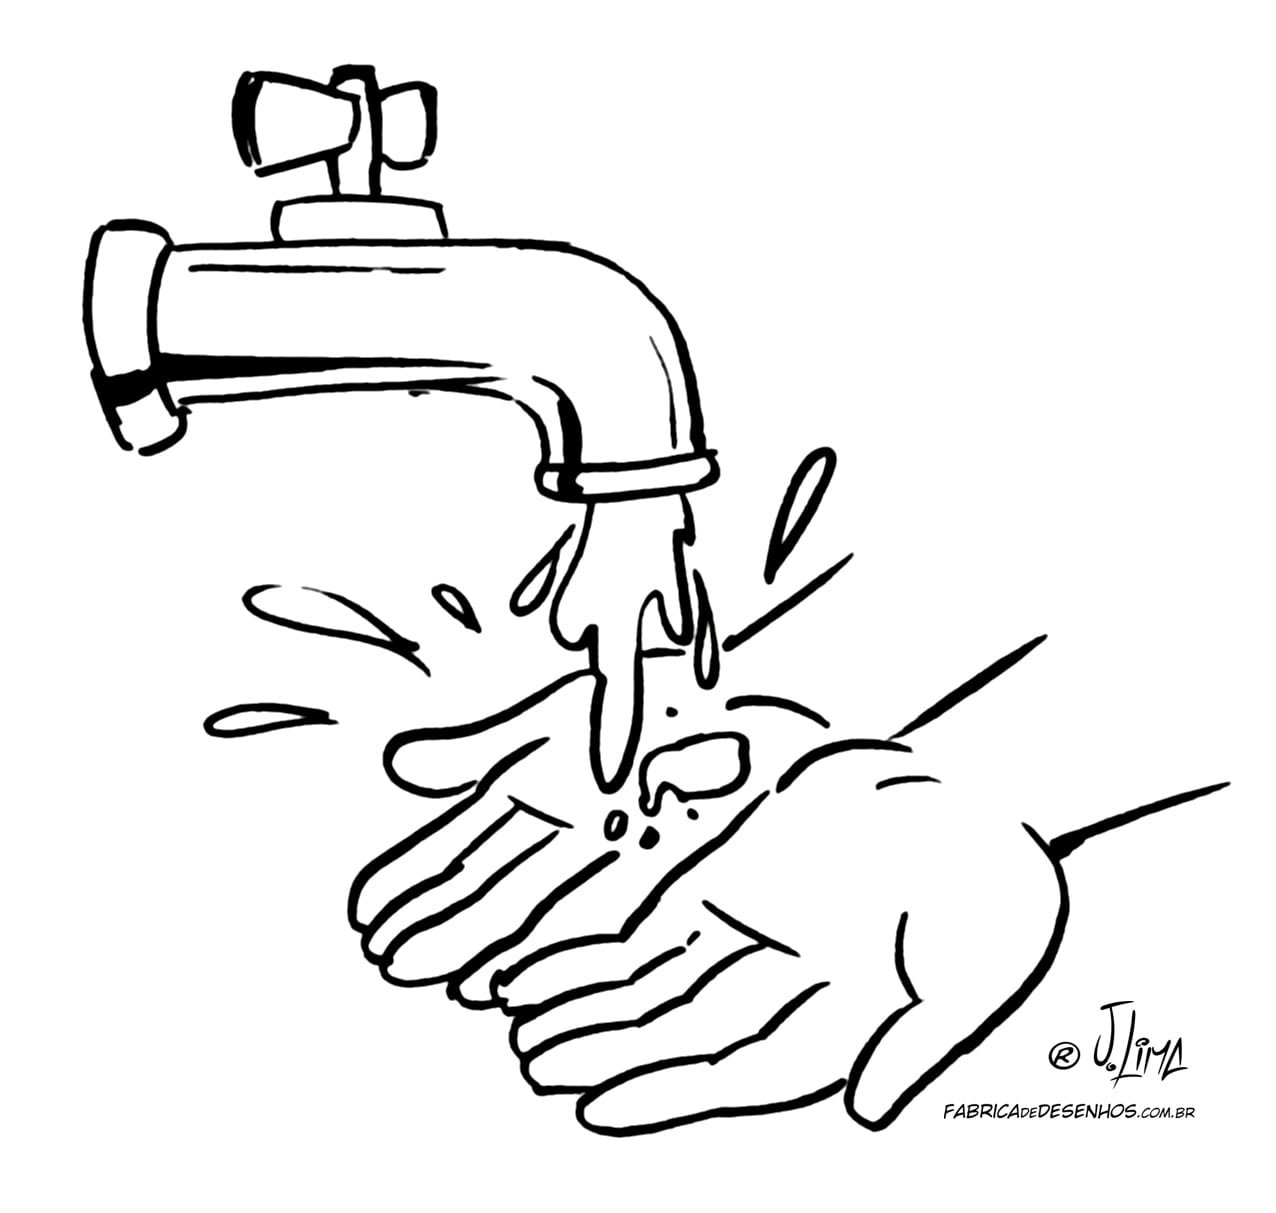 Окр моет руки. Раскраска мытье рук для детей. Кран водопроводный раскраска для детей. Вода раскраска. Вода раскраска для детей.